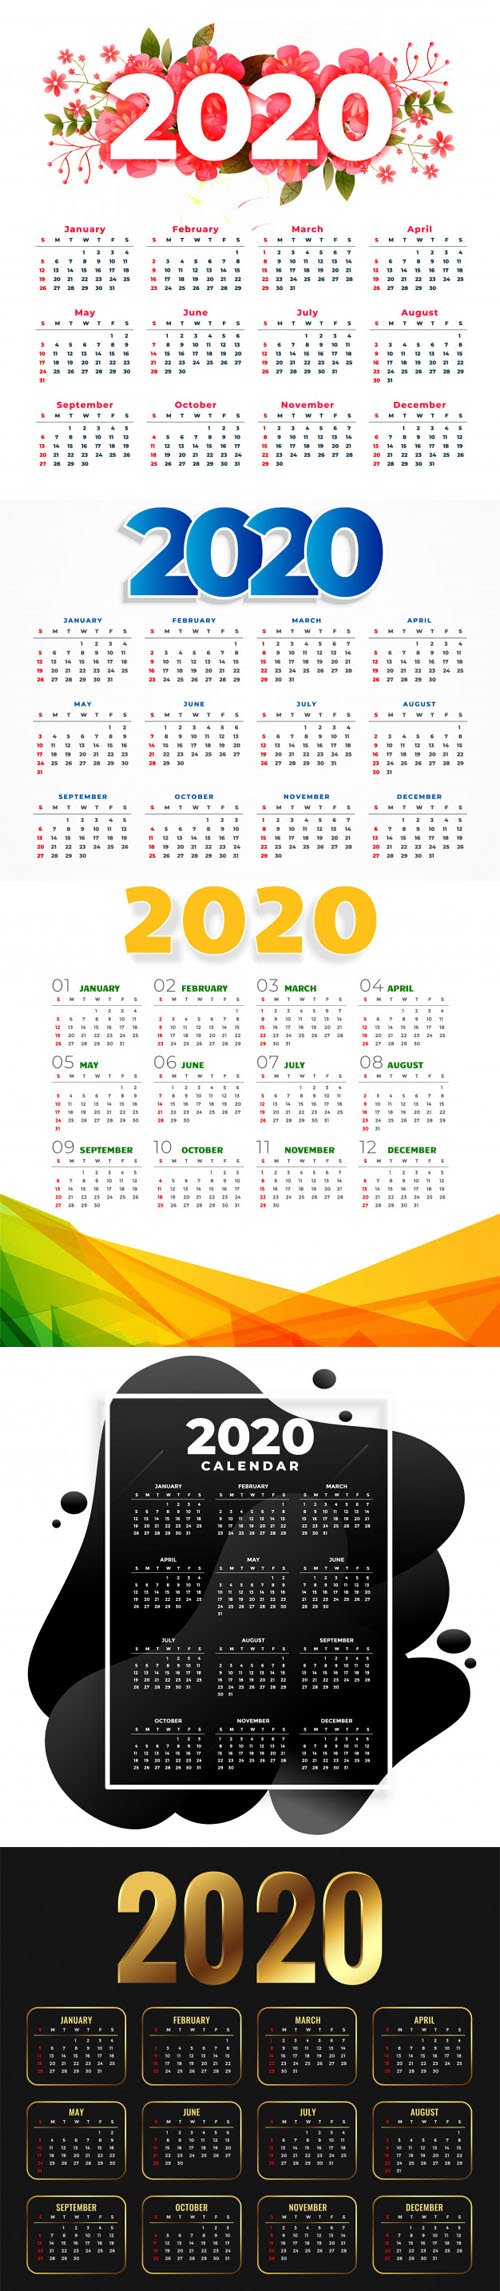 2020 Calendars Vector Collection 1